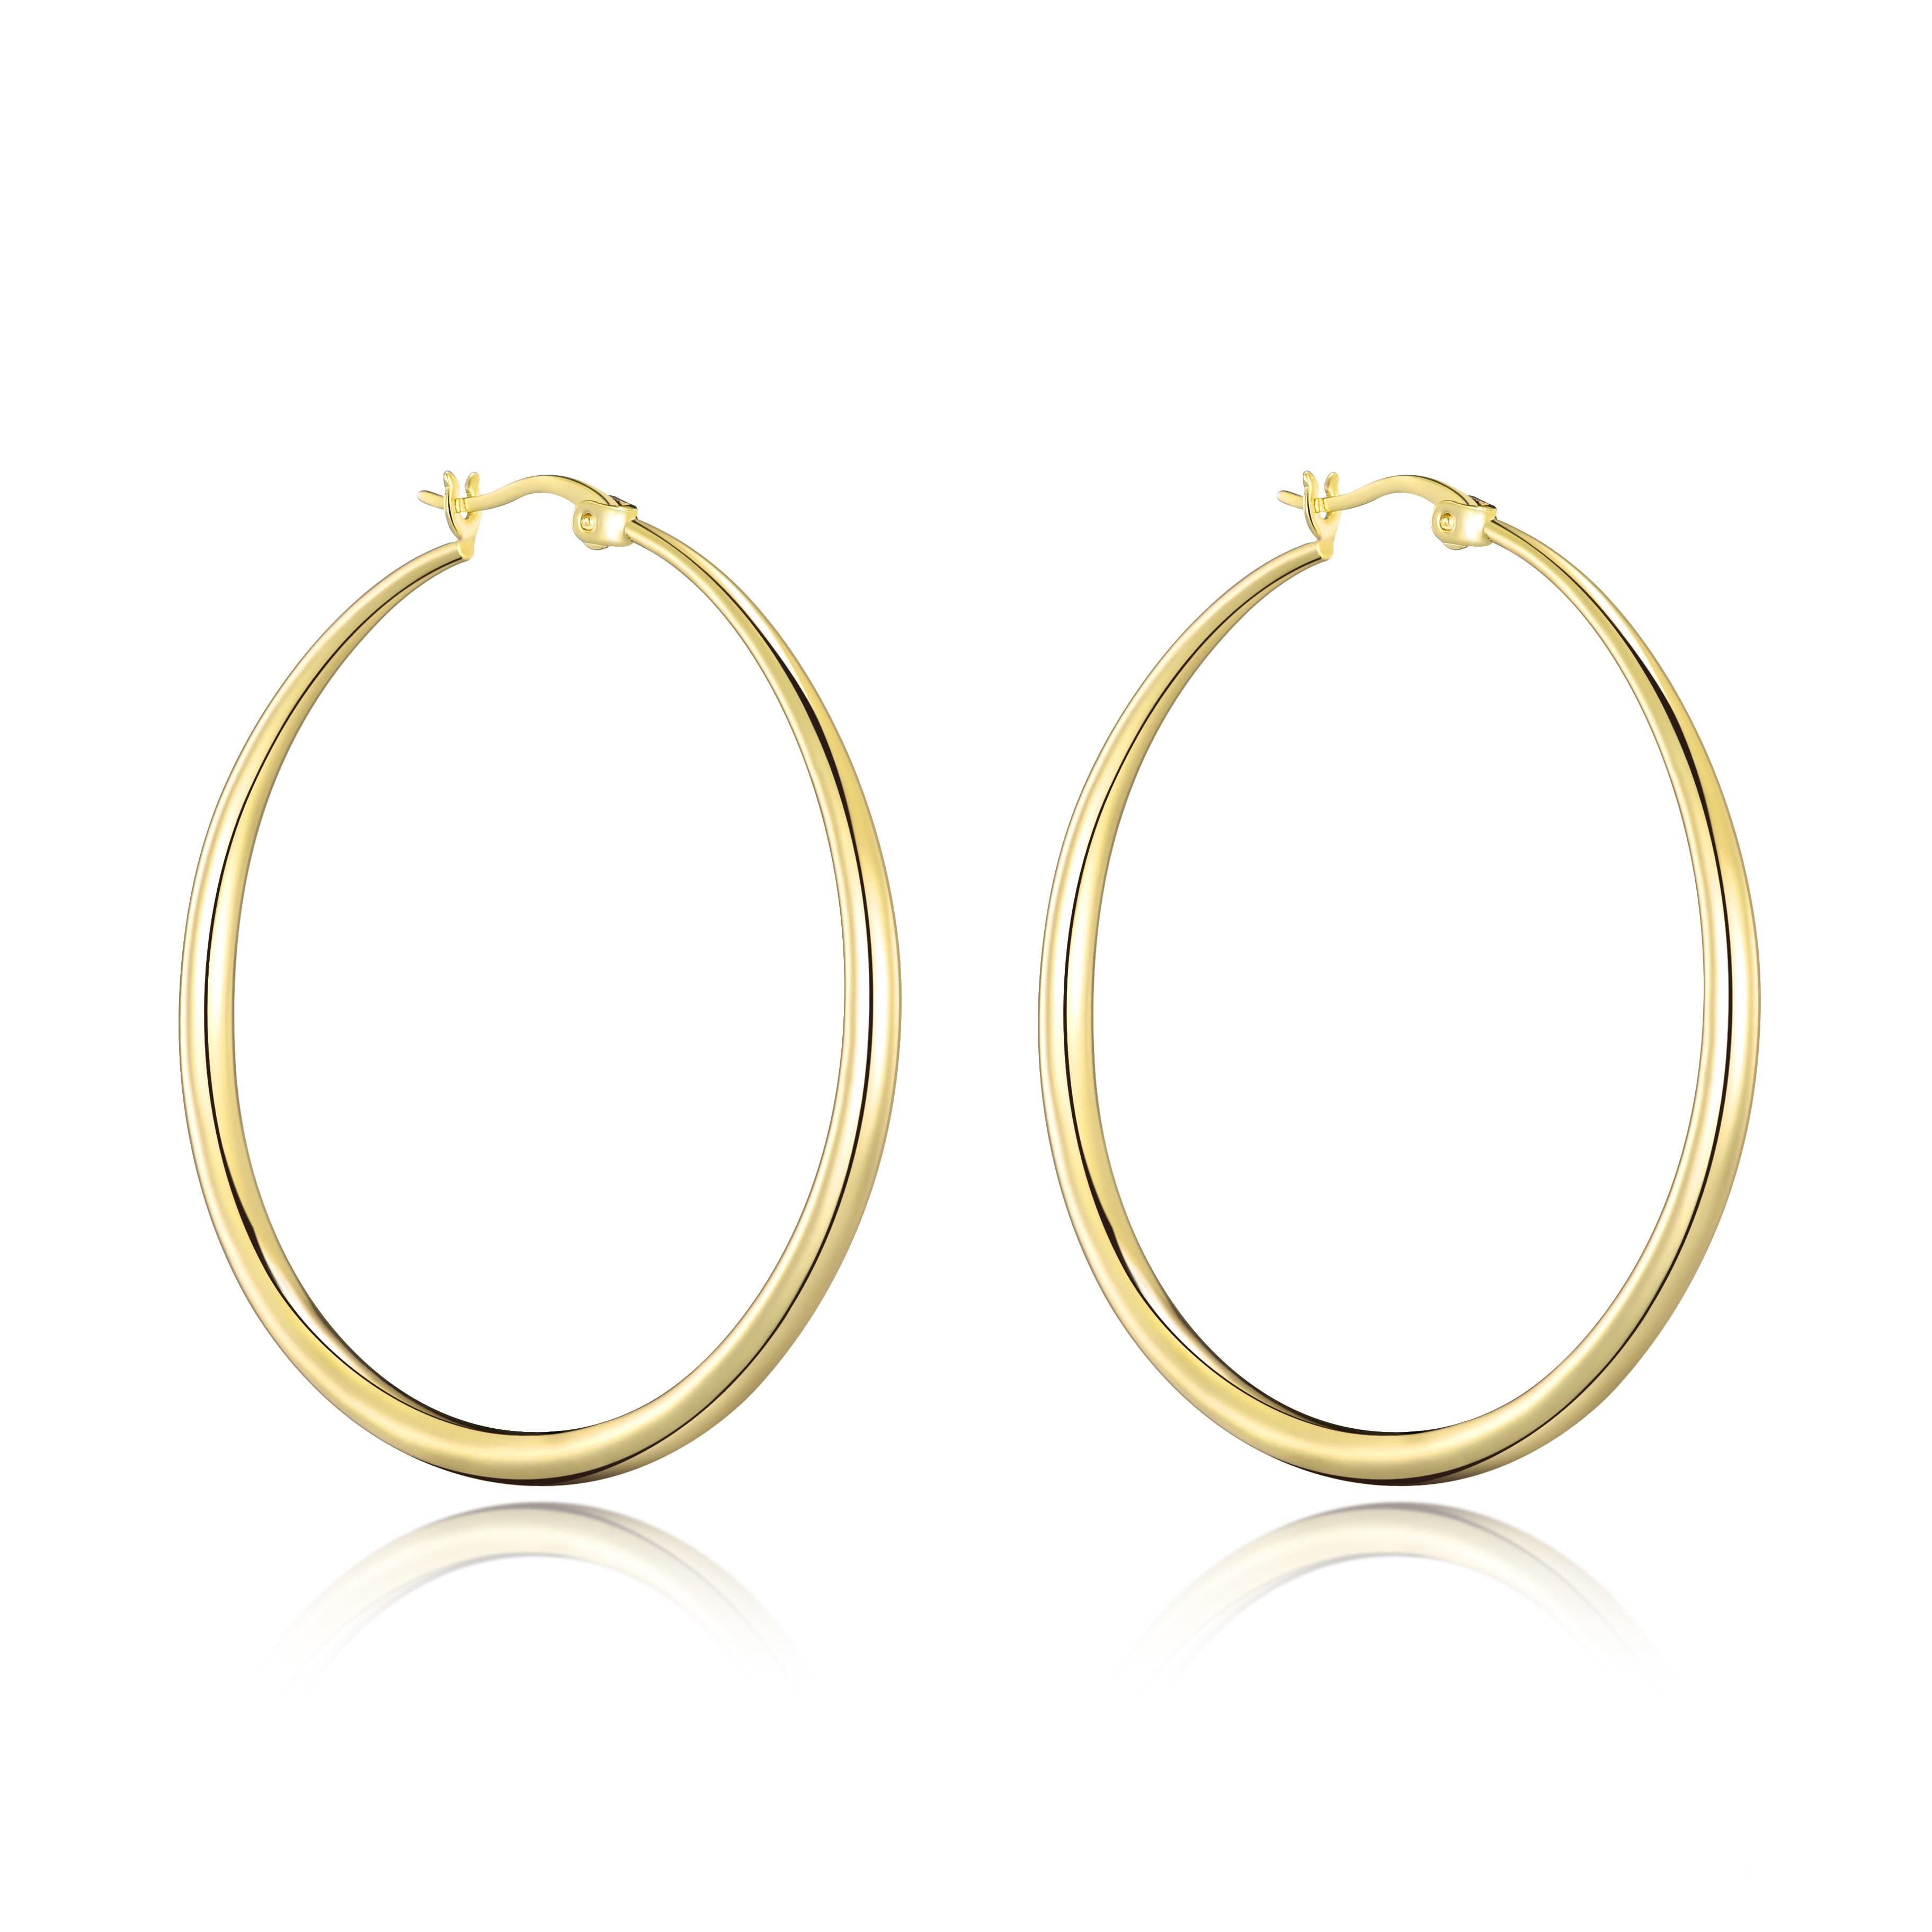 Gold Plated 50mm Hoop Earrings by Philip Jones Jewellery